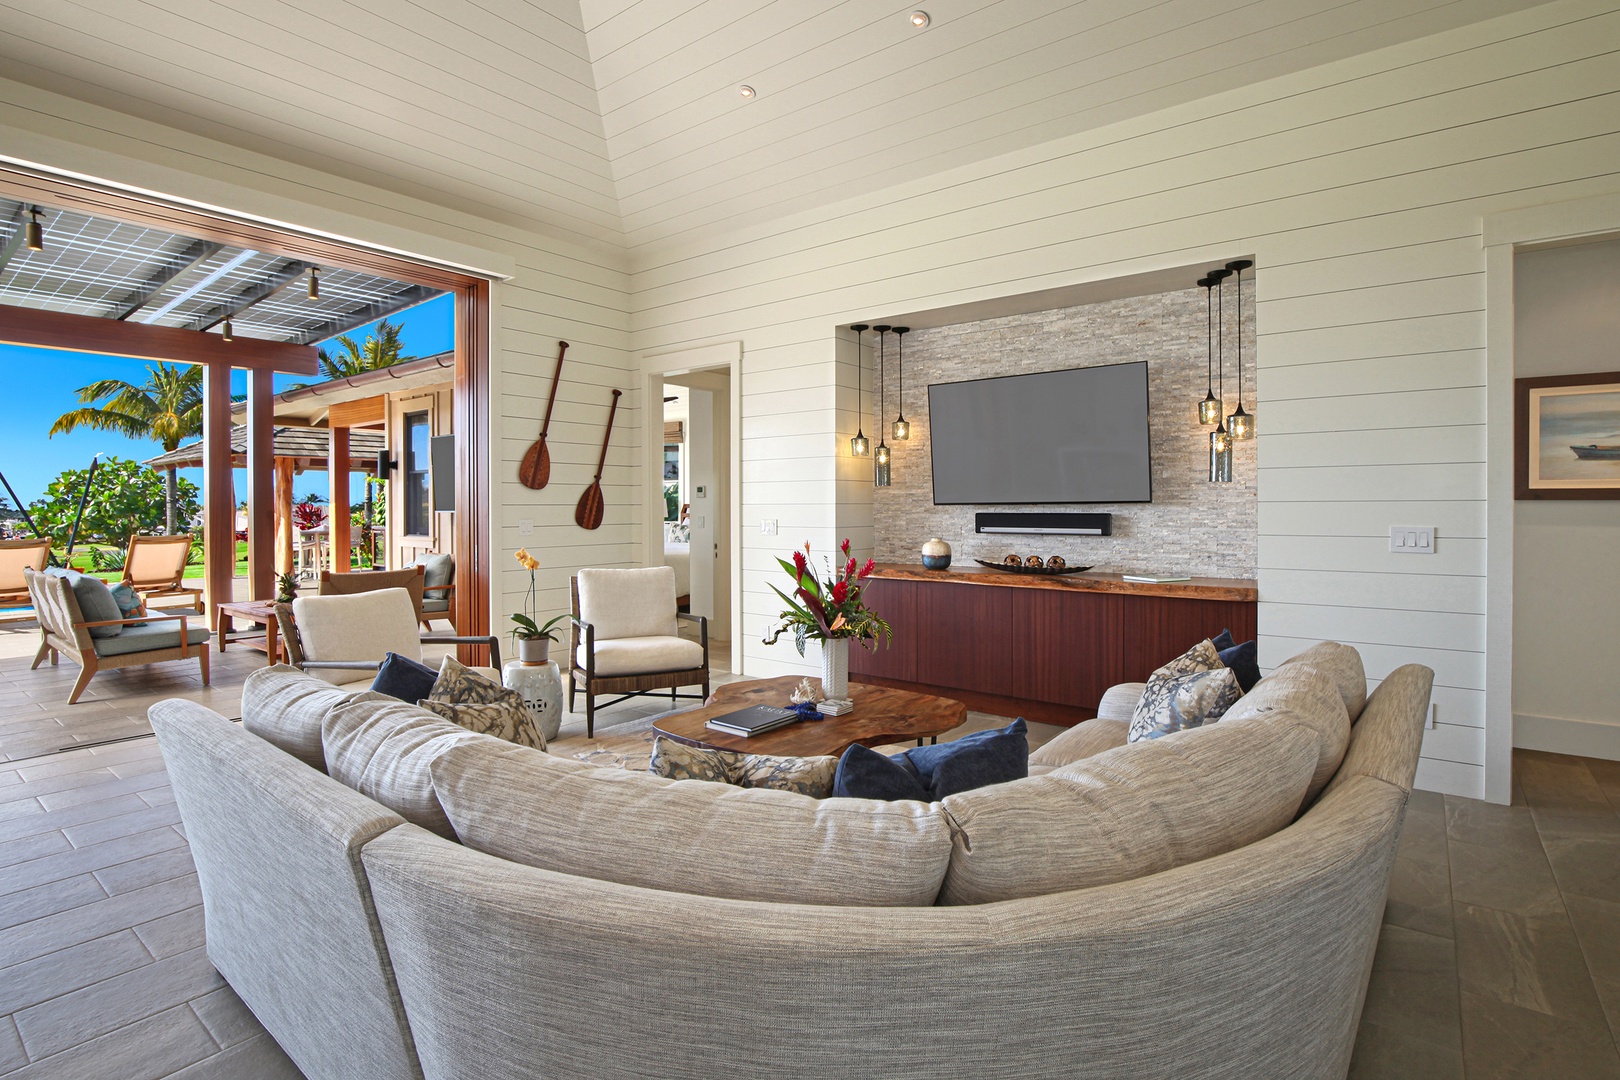 Koloa Vacation Rentals, Hale Mala Ulu - Living room with style